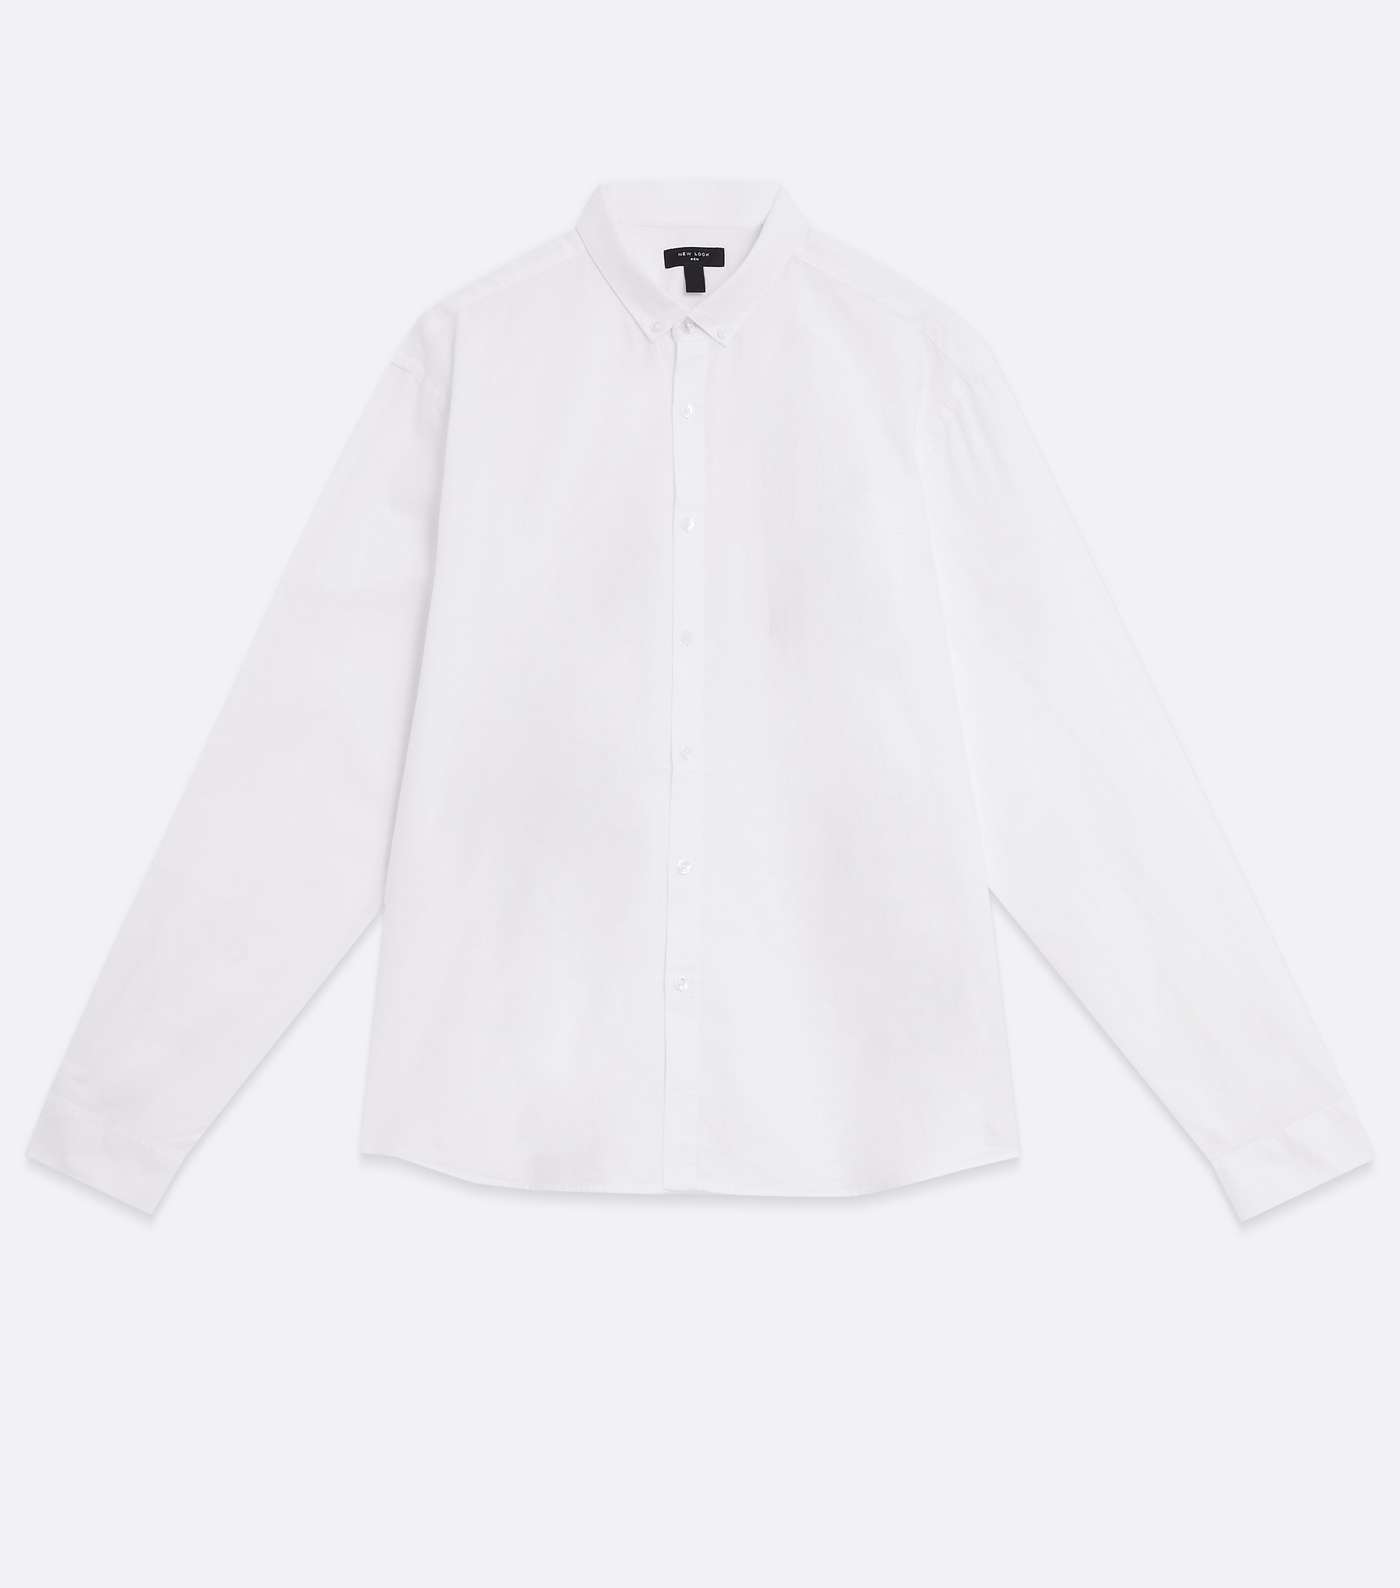 Plus Size White Cotton Oxford Shirt